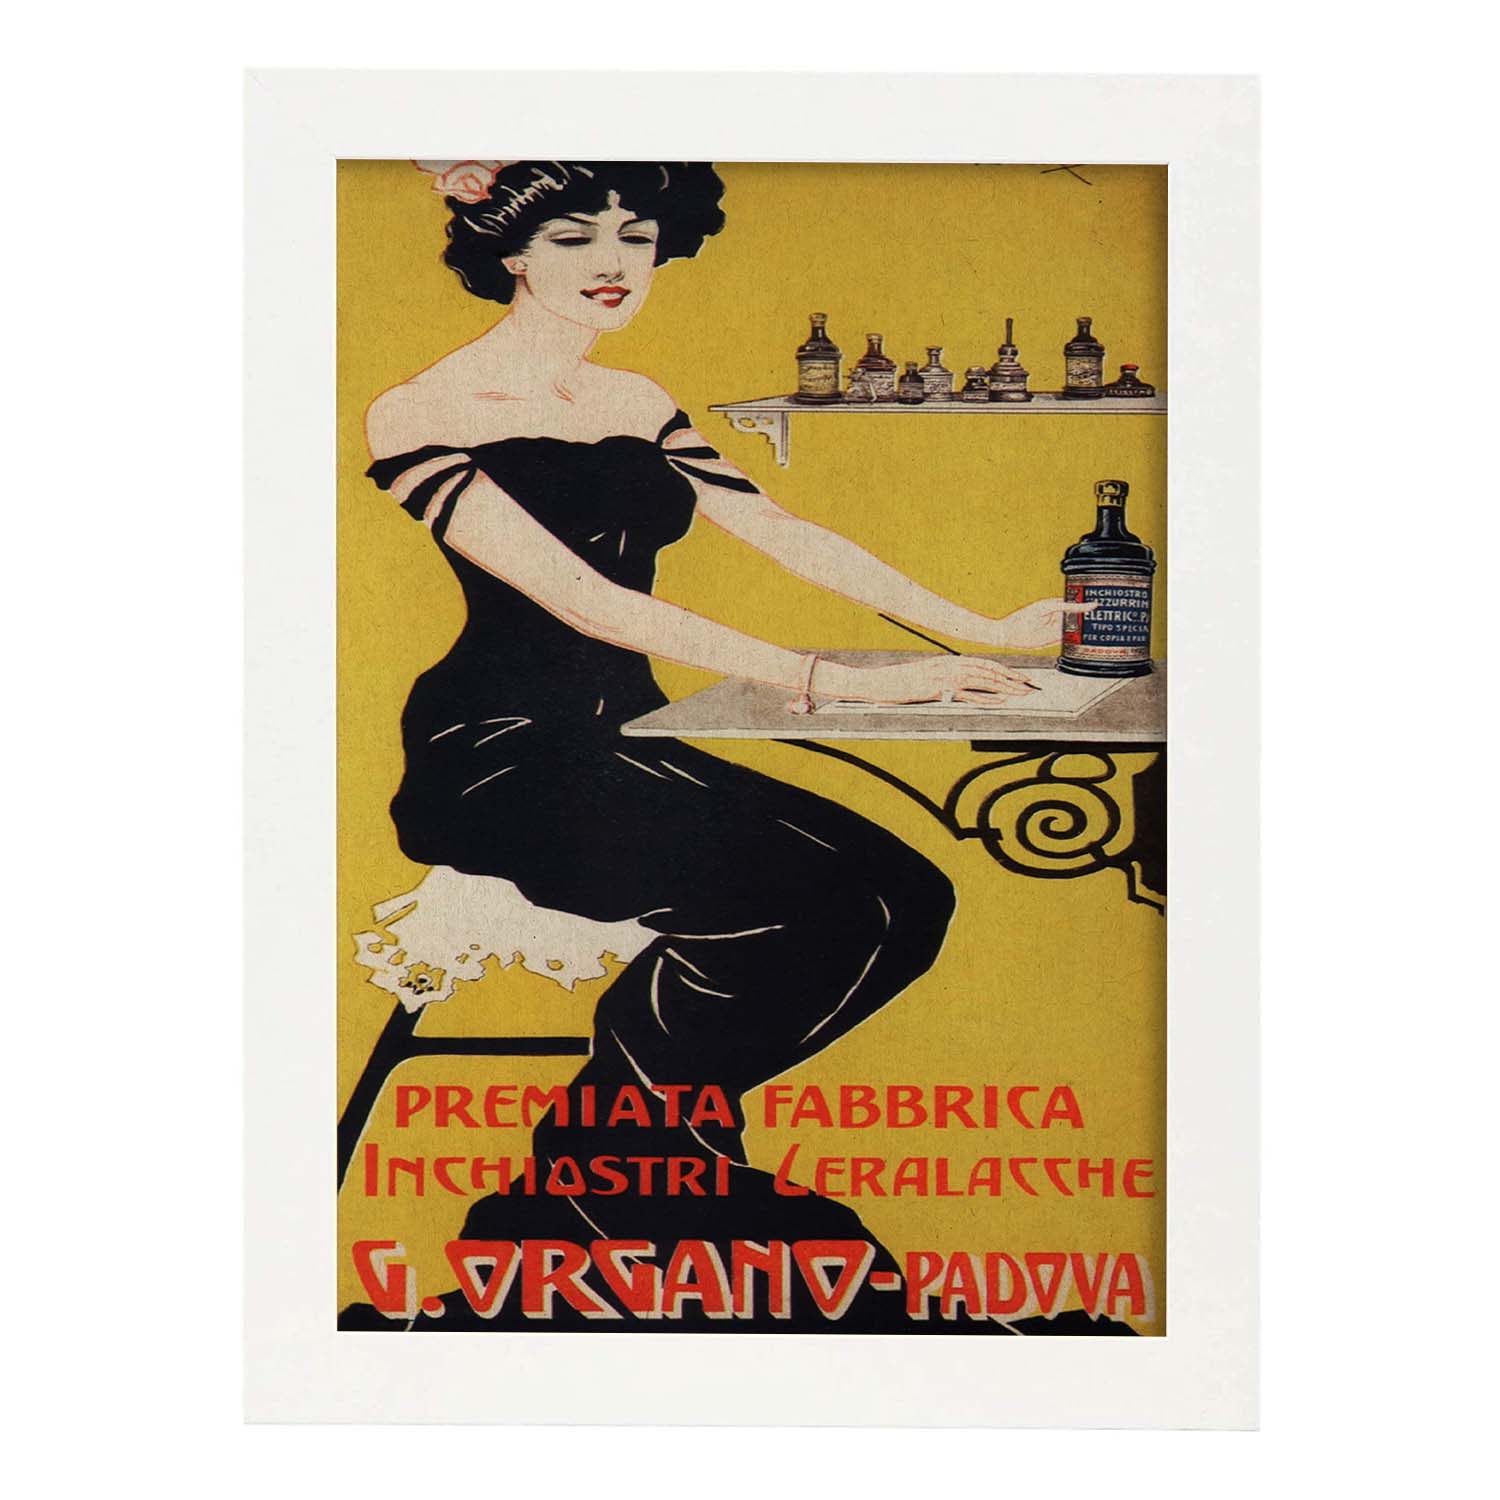 Poster vintage. Anuncio vintage italiano de G. Organo - Padova.-Artwork-Nacnic-A4-Marco Blanco-Nacnic Estudio SL